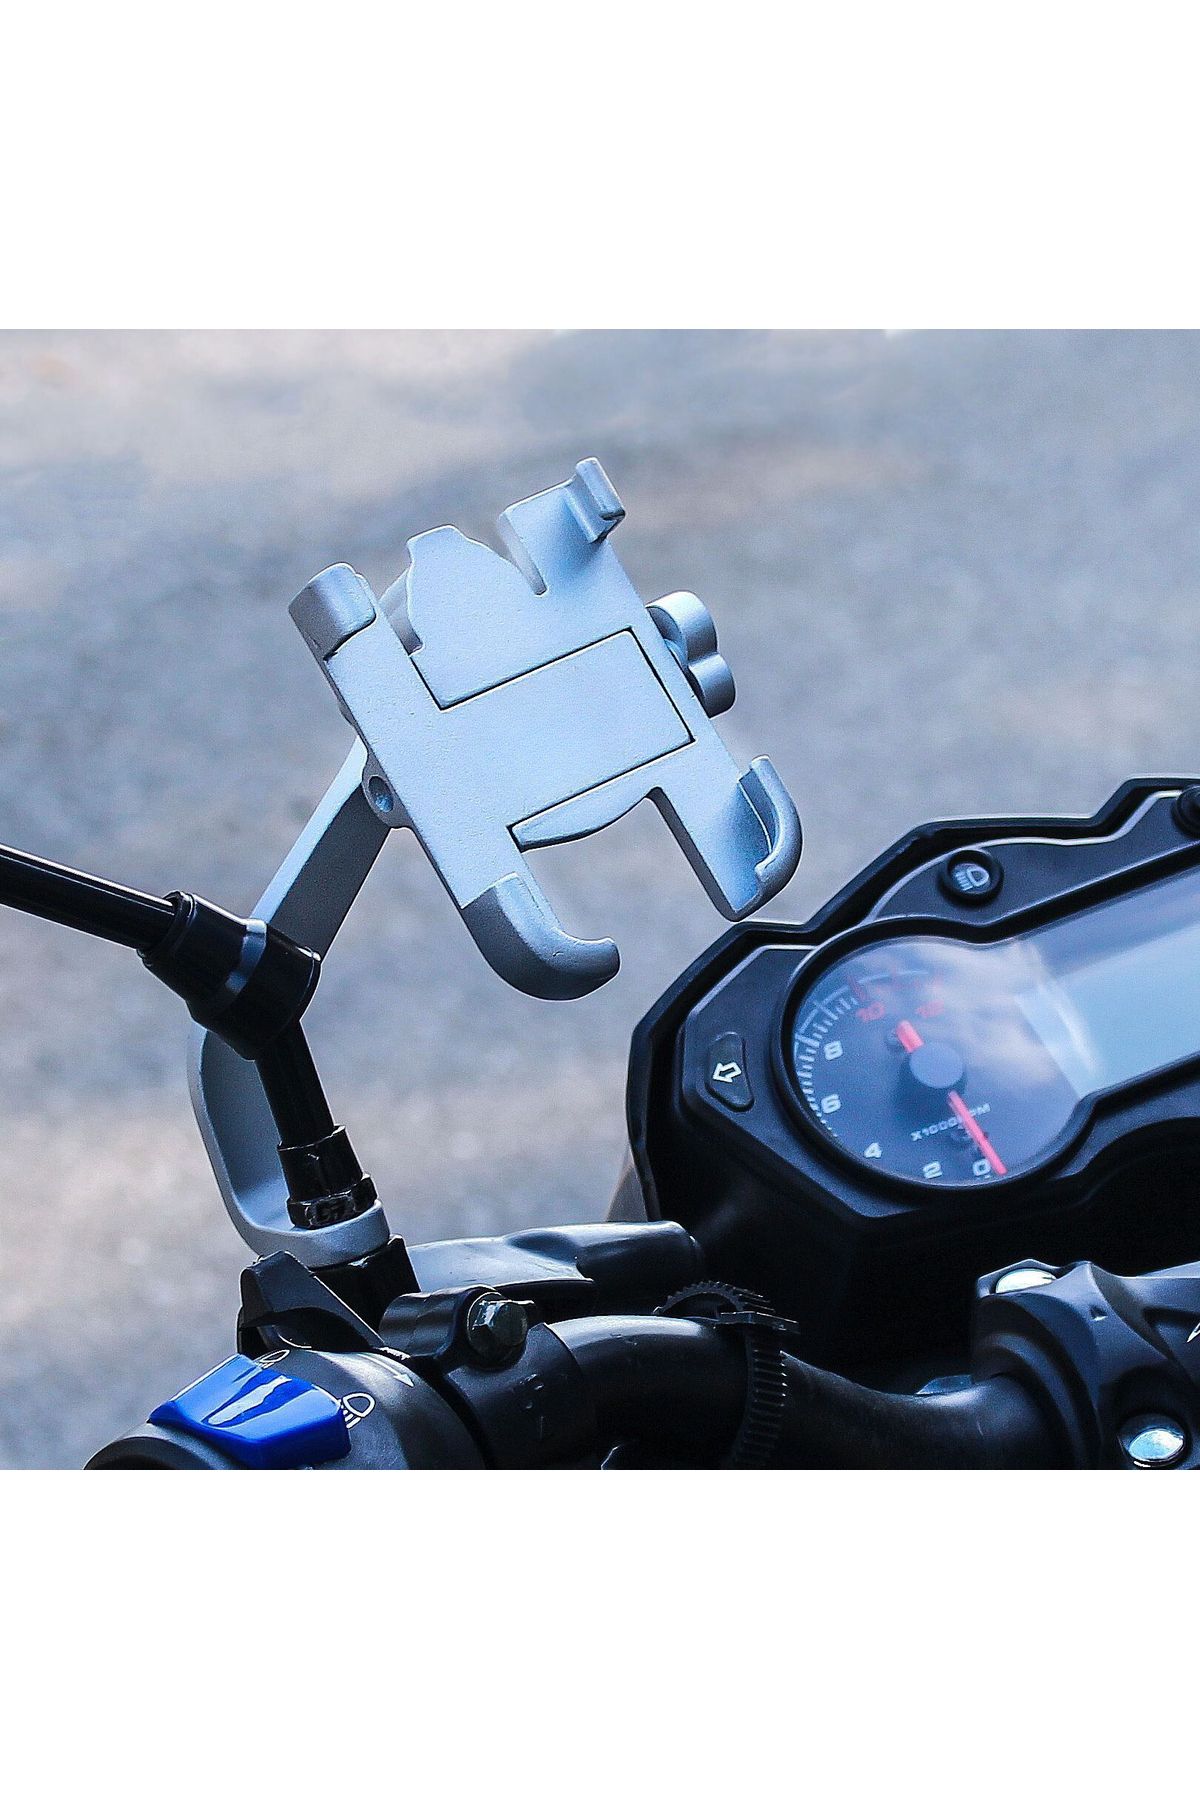 asua Dikiz Ayna Bağlantılı Metal Motosiklet ve Bisiklet Telefon Tutucu Metal Motorsiklet Telefon Tutacağı